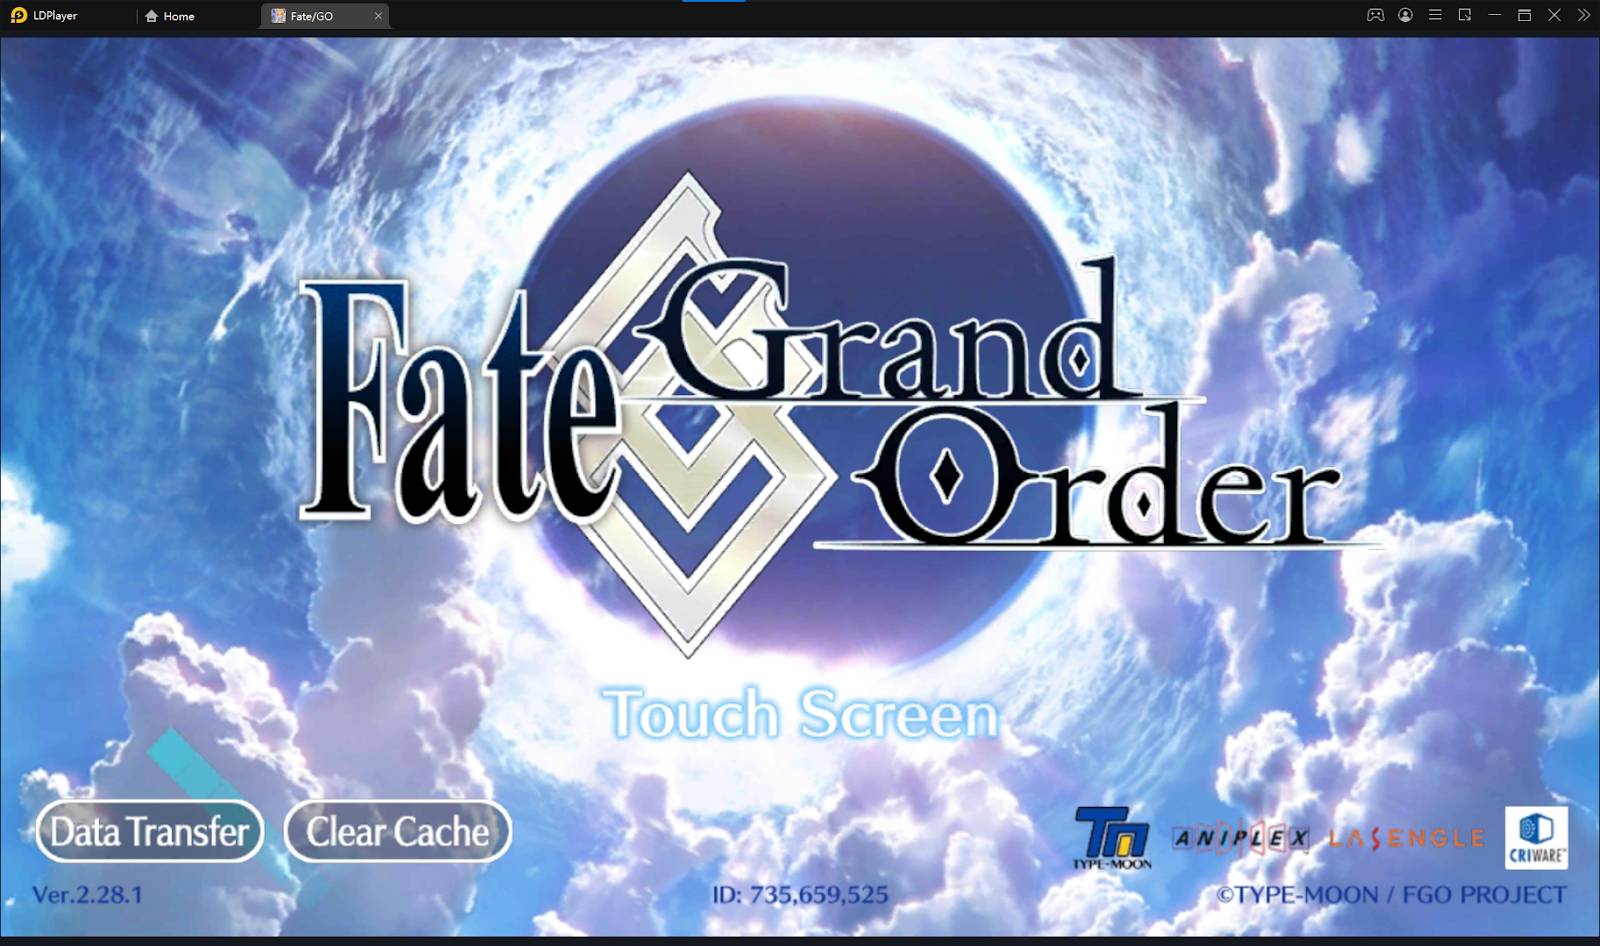 Fate/Grand Order kostenloses SSR Ticket - Alles was ihr wissen müsst